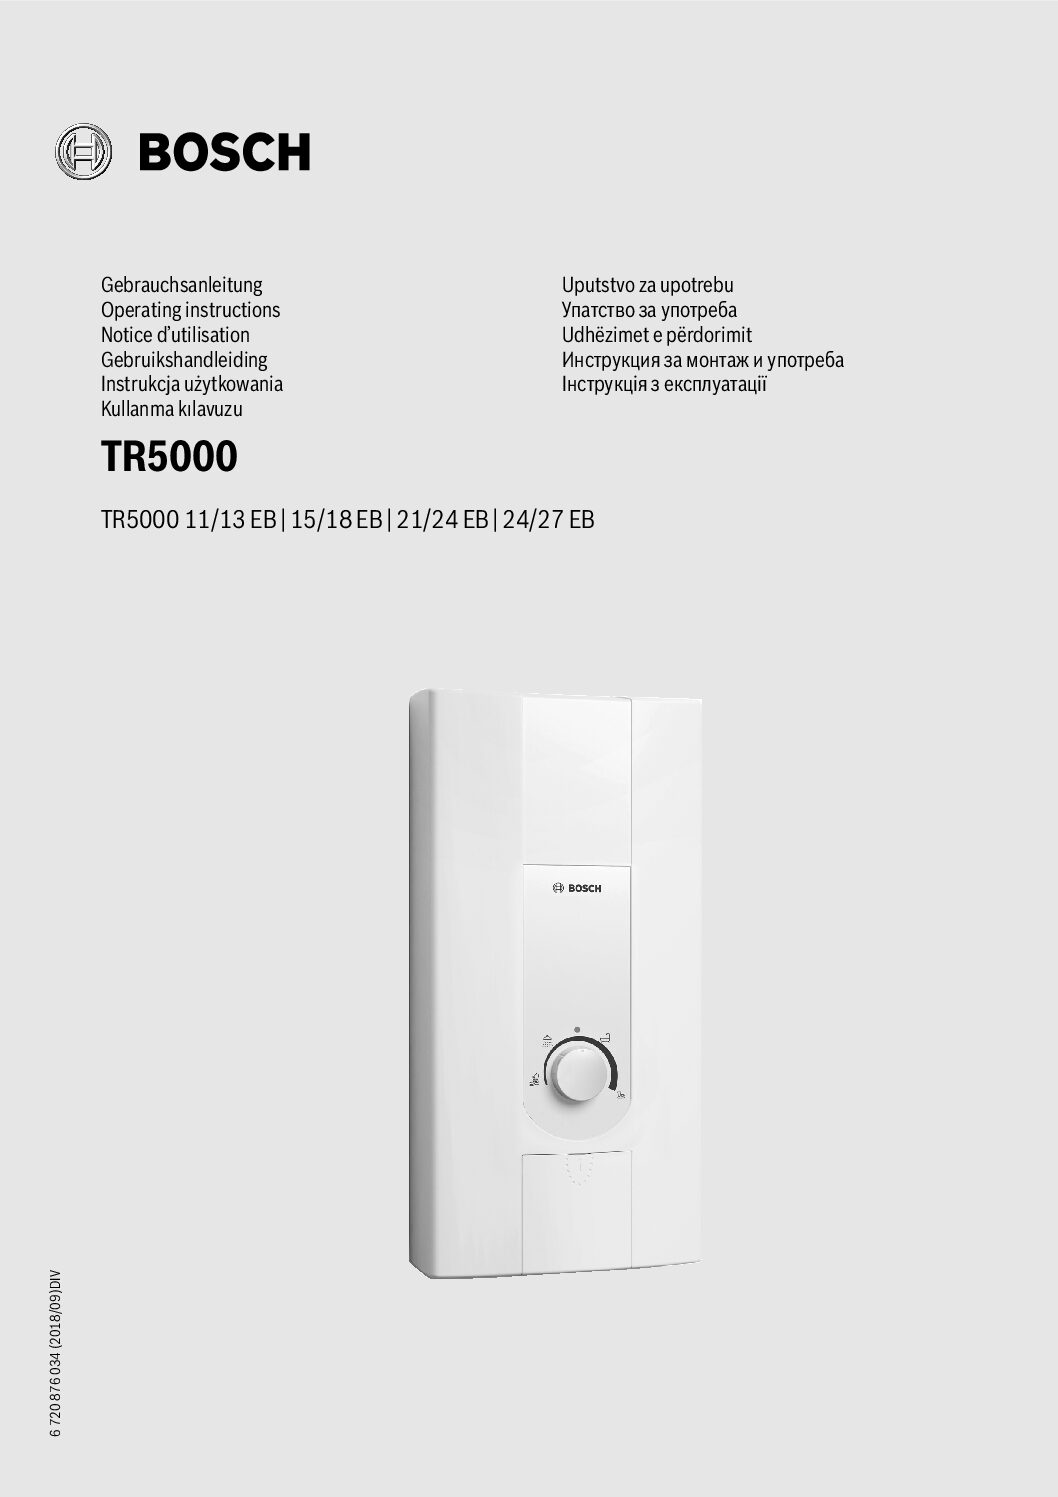 Bosch Tronic 5000 Bedienungsanleitung